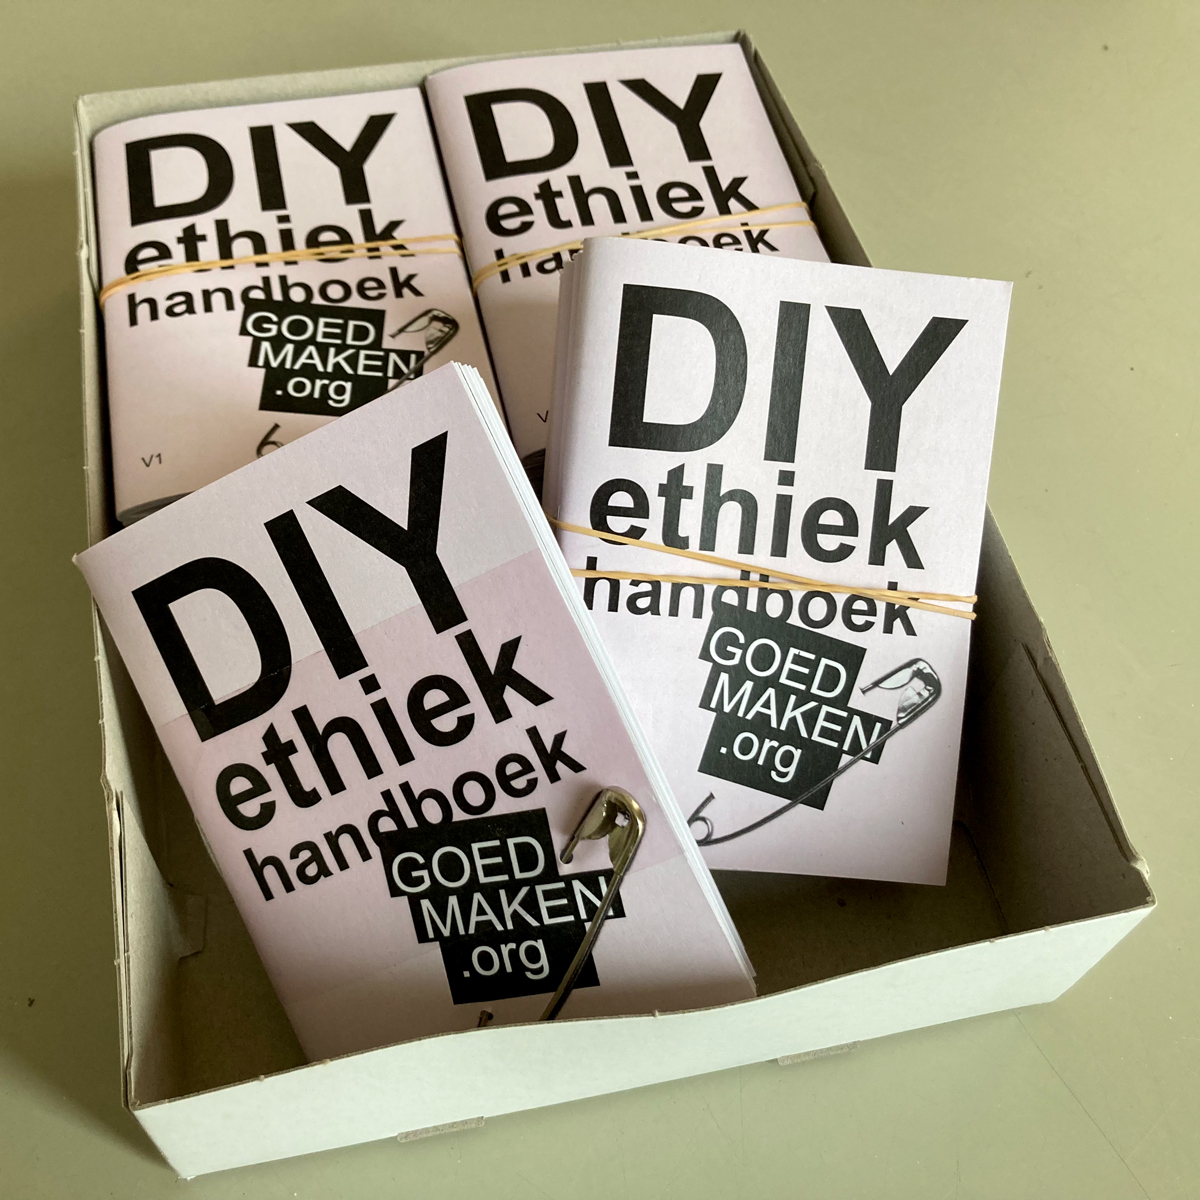 DIY ethiek handboek gedrukt